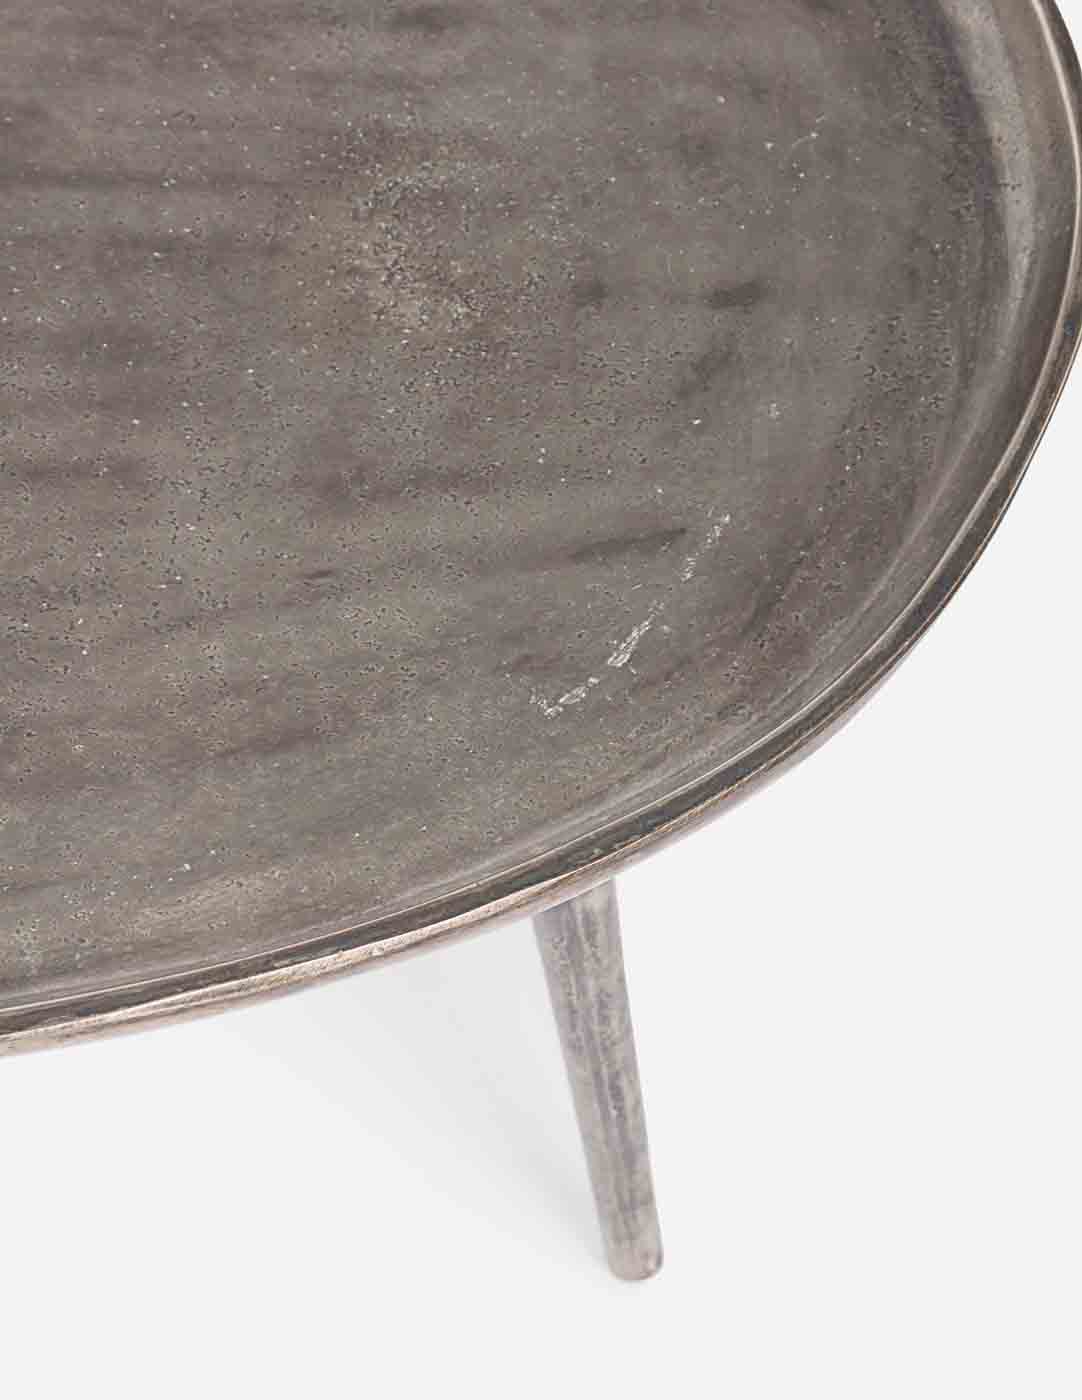 Der runde Beistelltisch Tahir wurde aus Aluminium gefertigt. Die Oberfläche ist versilbert und hat eine Feinbearbeitung erhalten.